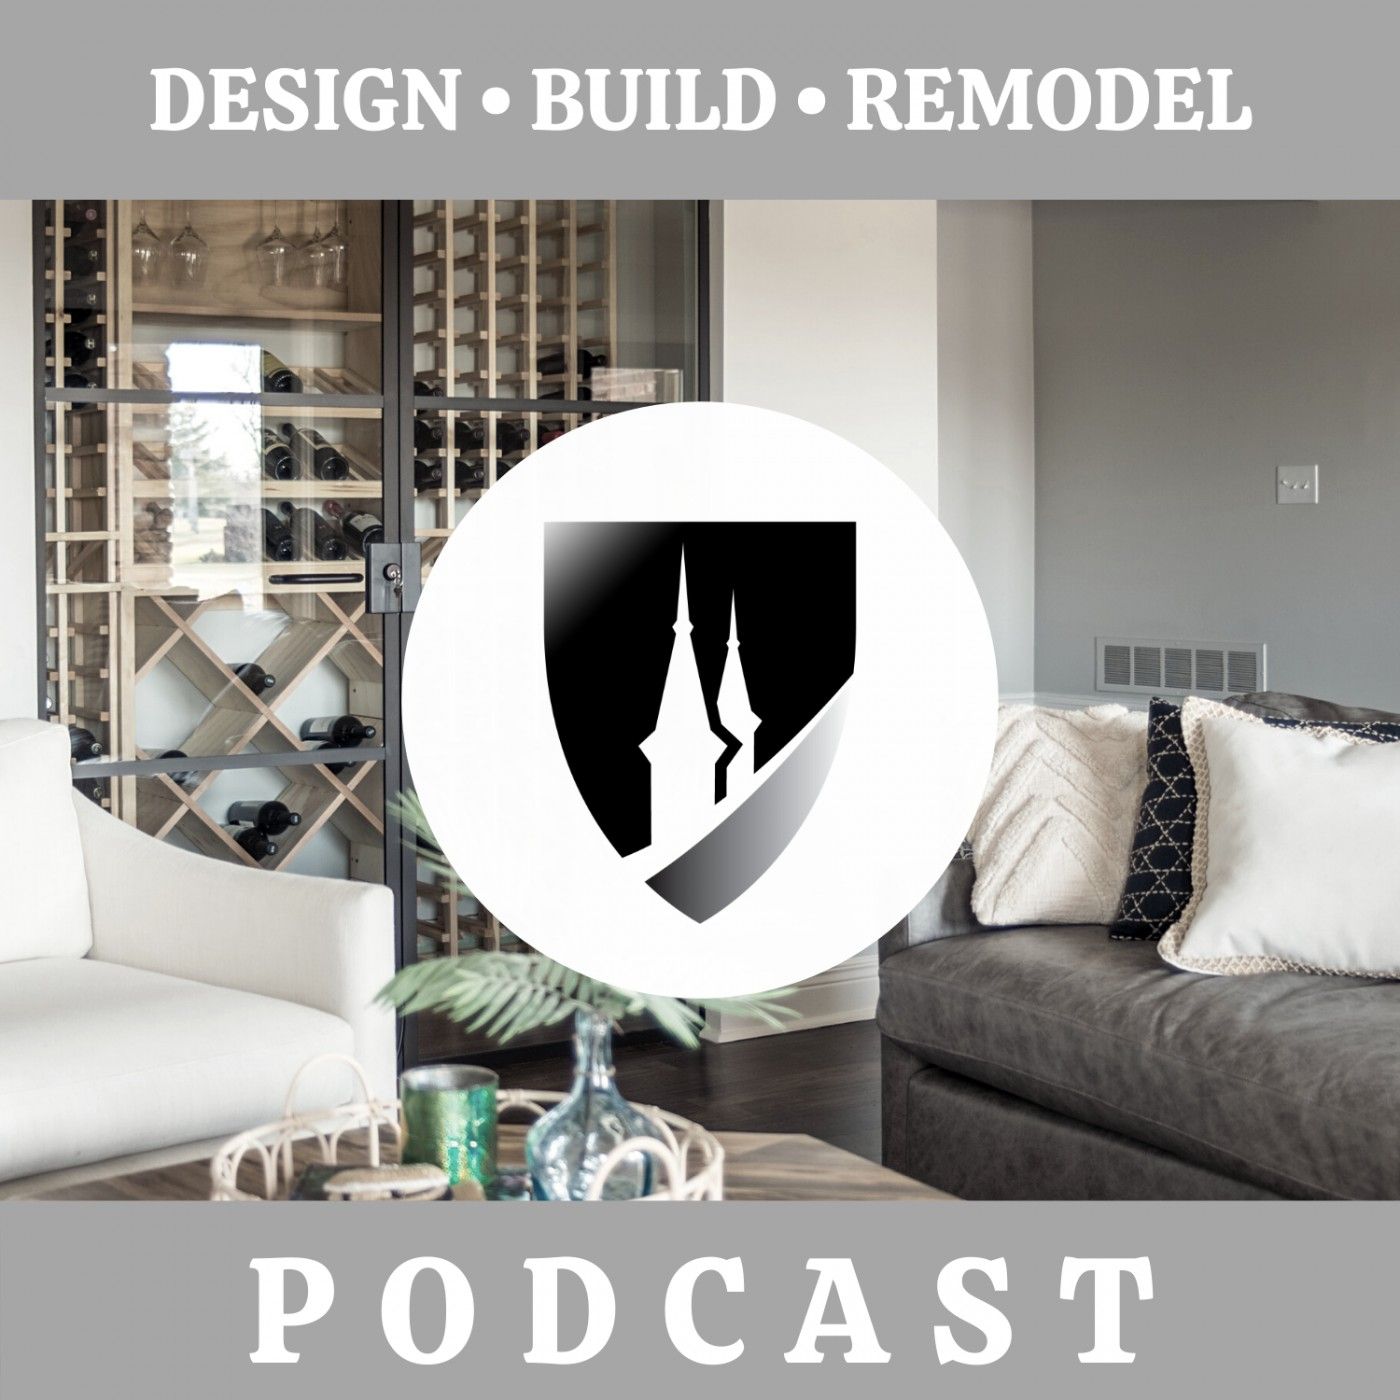 Design Build Remodel | Twin Spires Remodeling